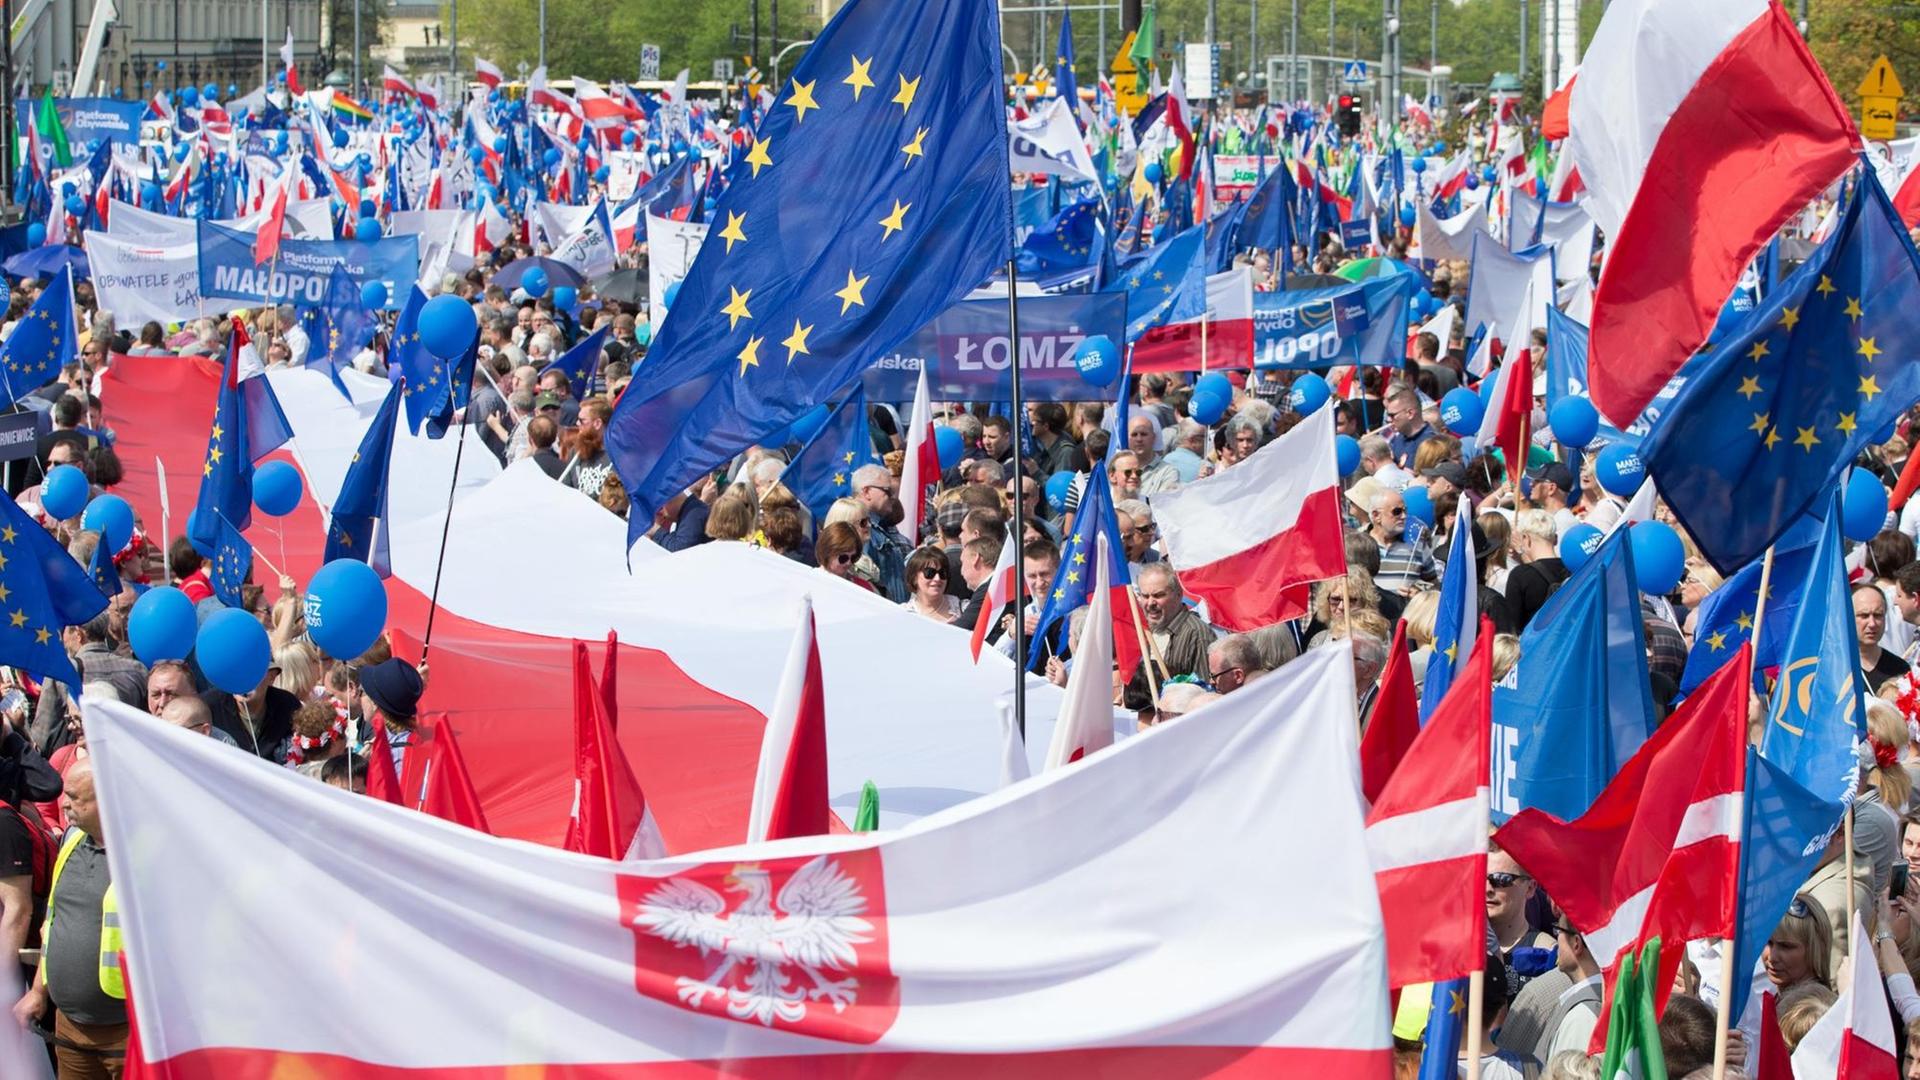 Demonstranten gehen während des Marschs für Freiheit am 06.05.2017 in Warschau mit polnischen und Europaflaggen durch die Innenstadt, um gegen die Regierung und für Europa zu demonstrieren. Der Marsch für die Verteidigung der Freiheit und der europäischen Werte wurde unter anderem von der Oppositionspartei Platforma Obywatelska (Bürgerplattform, PO) organisiert.